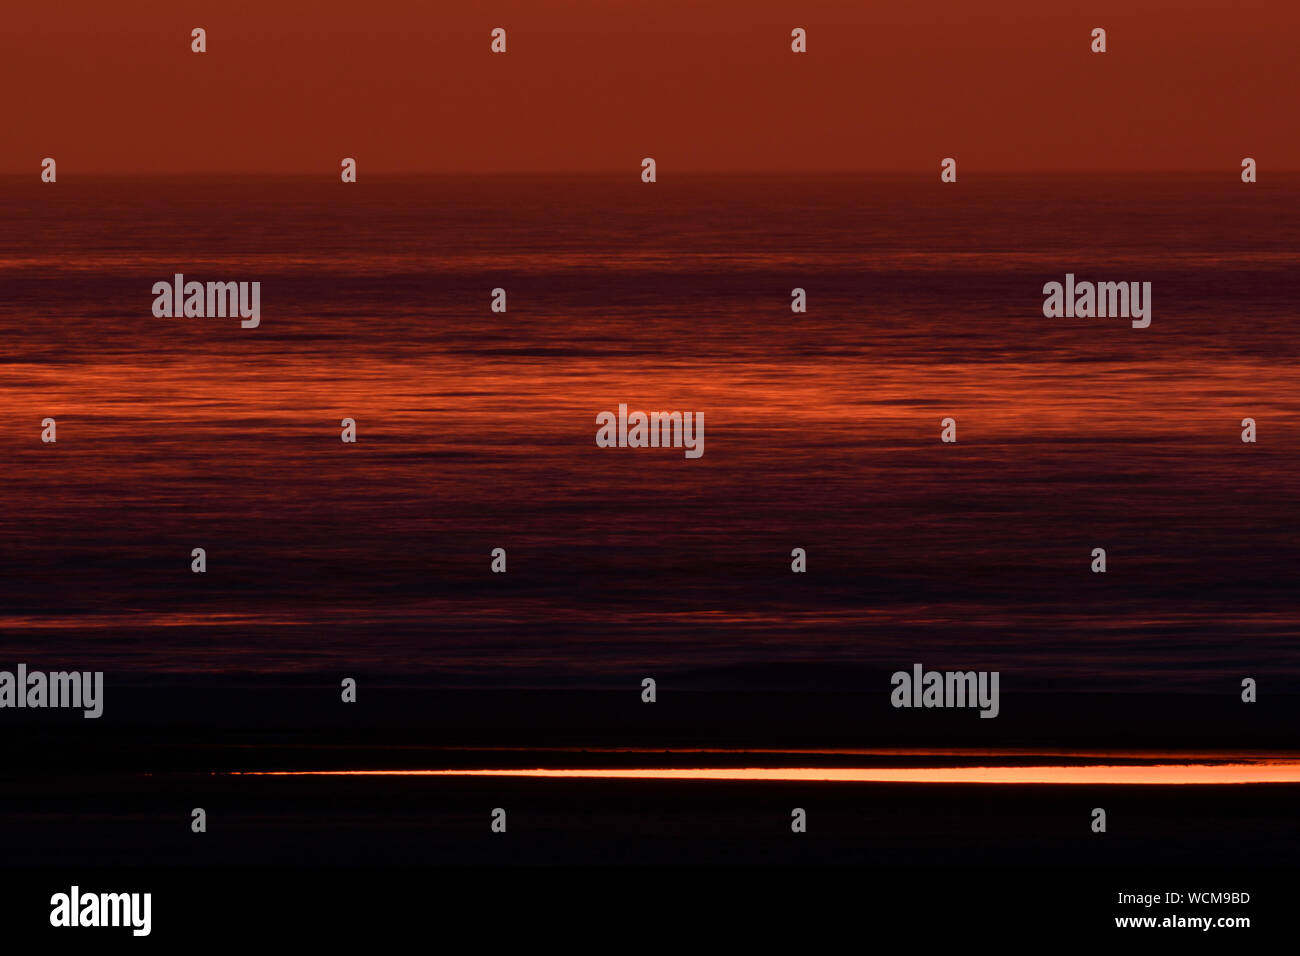 Lange Exposition von rot und orange gefärbten Himmel, Meer und Strand nur wenige Minuten nach Sonnenuntergang, Ende der Tag, voller Atmosphäre und Stille, Europa. Stockfoto